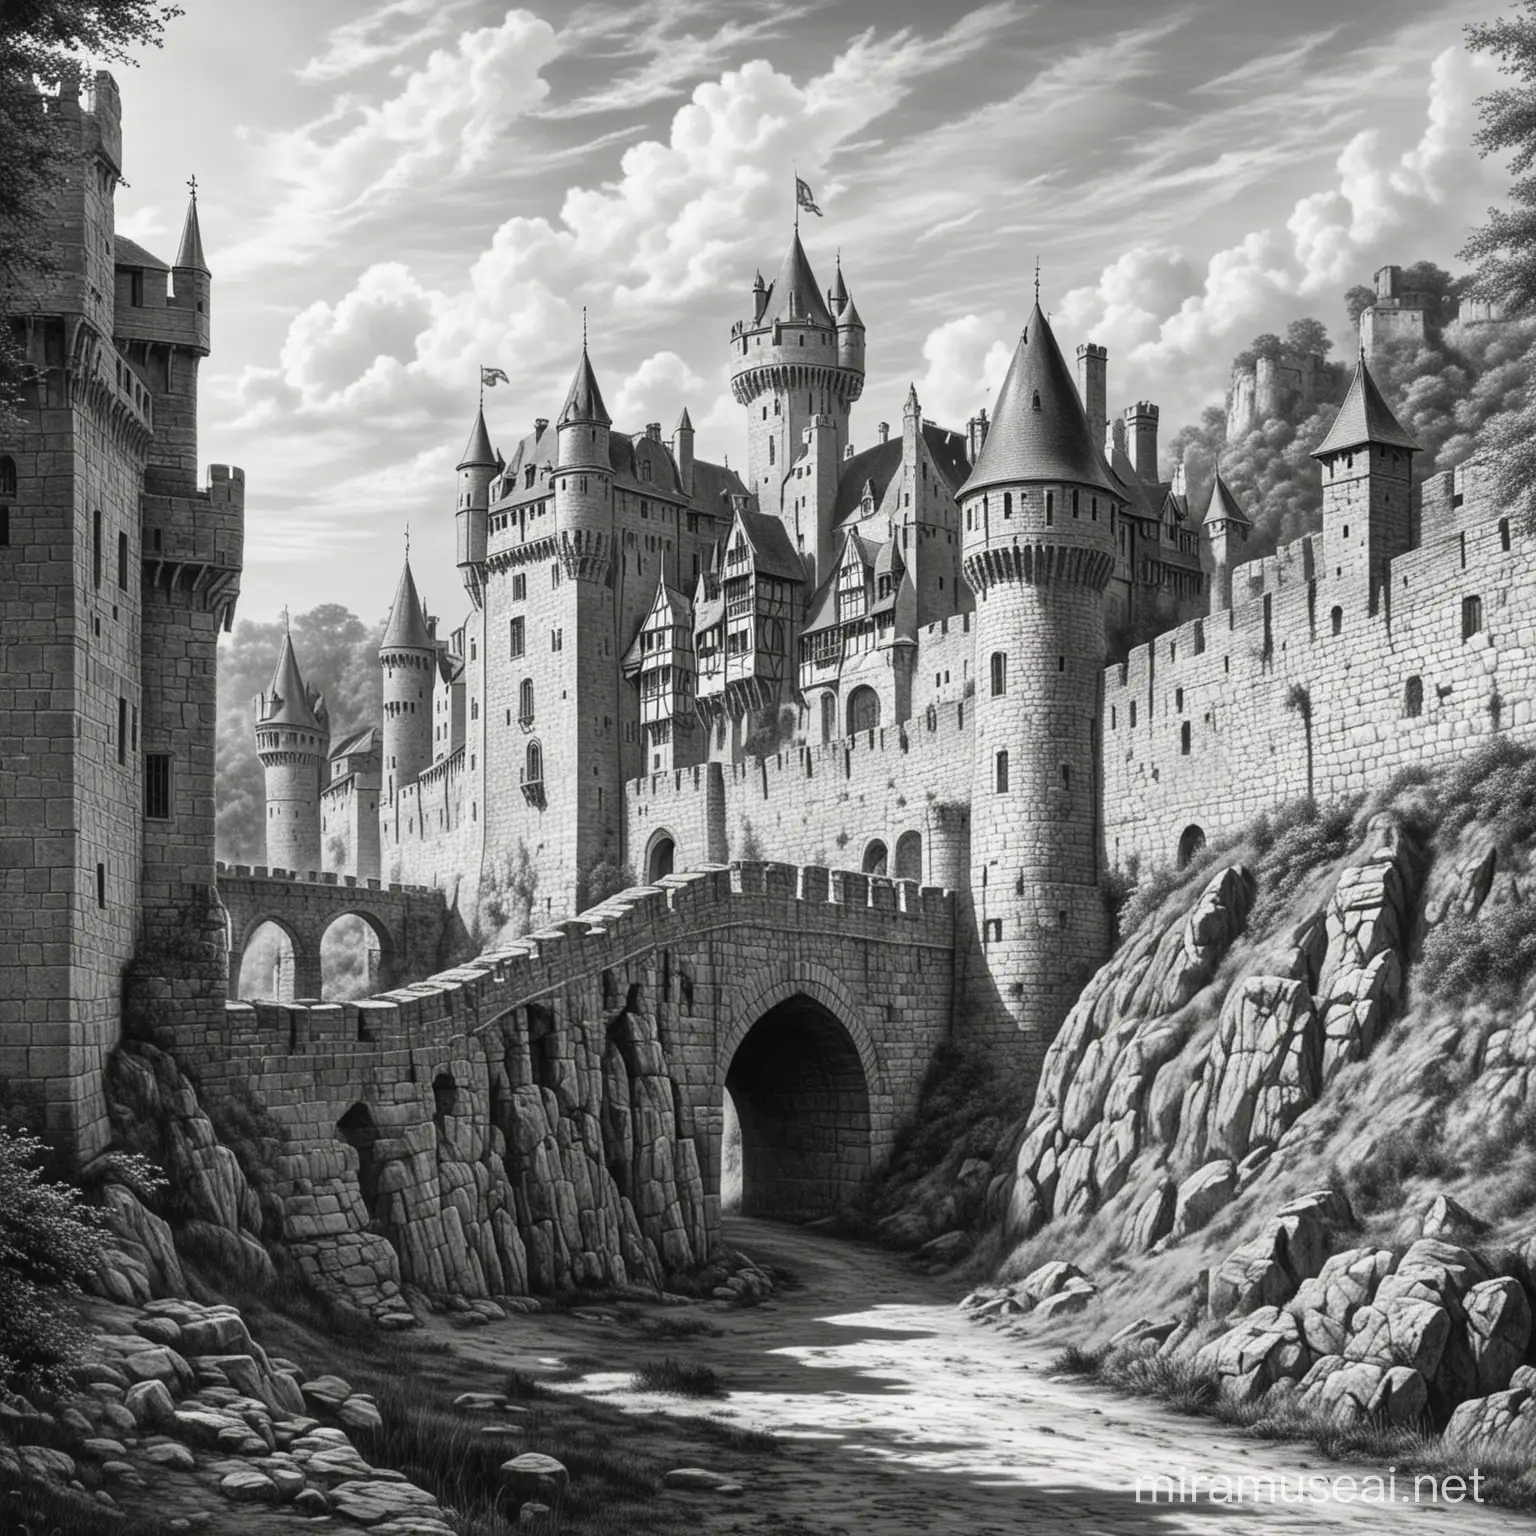 Dibujo estilo medieval en blanco y negro demuralla del castillo
